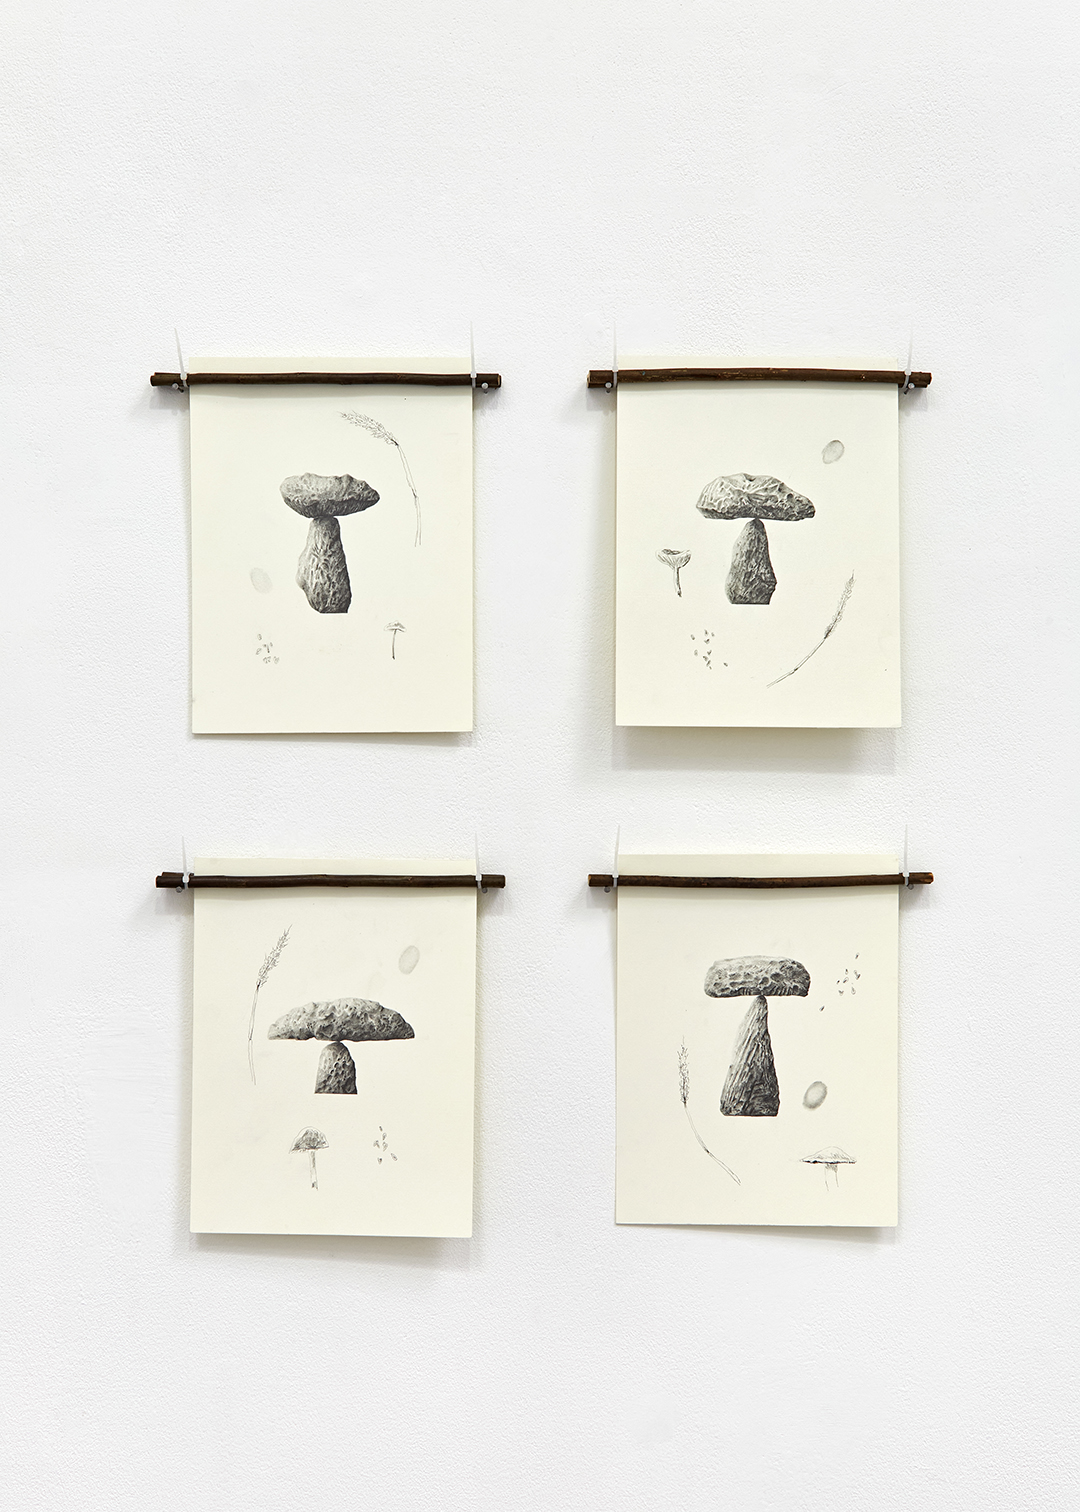 Mushroom drawings